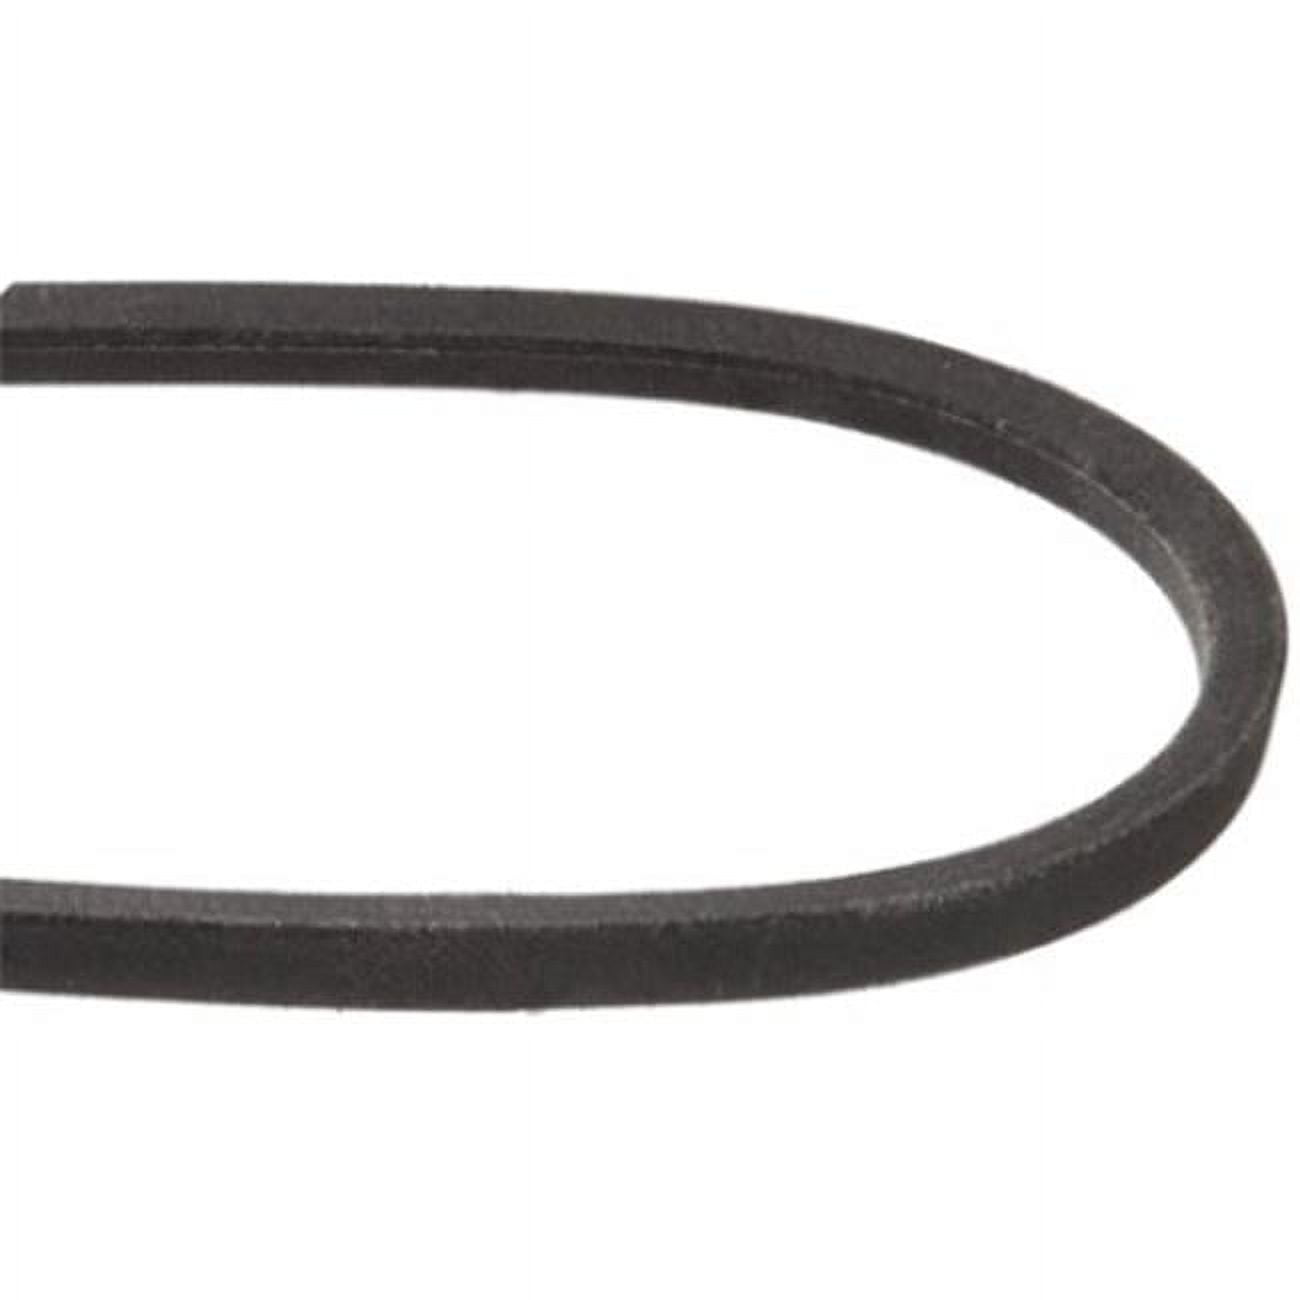 Mxv4-310 31 In. Heavy-duty Lawn & Garden Equipment Belt, Black